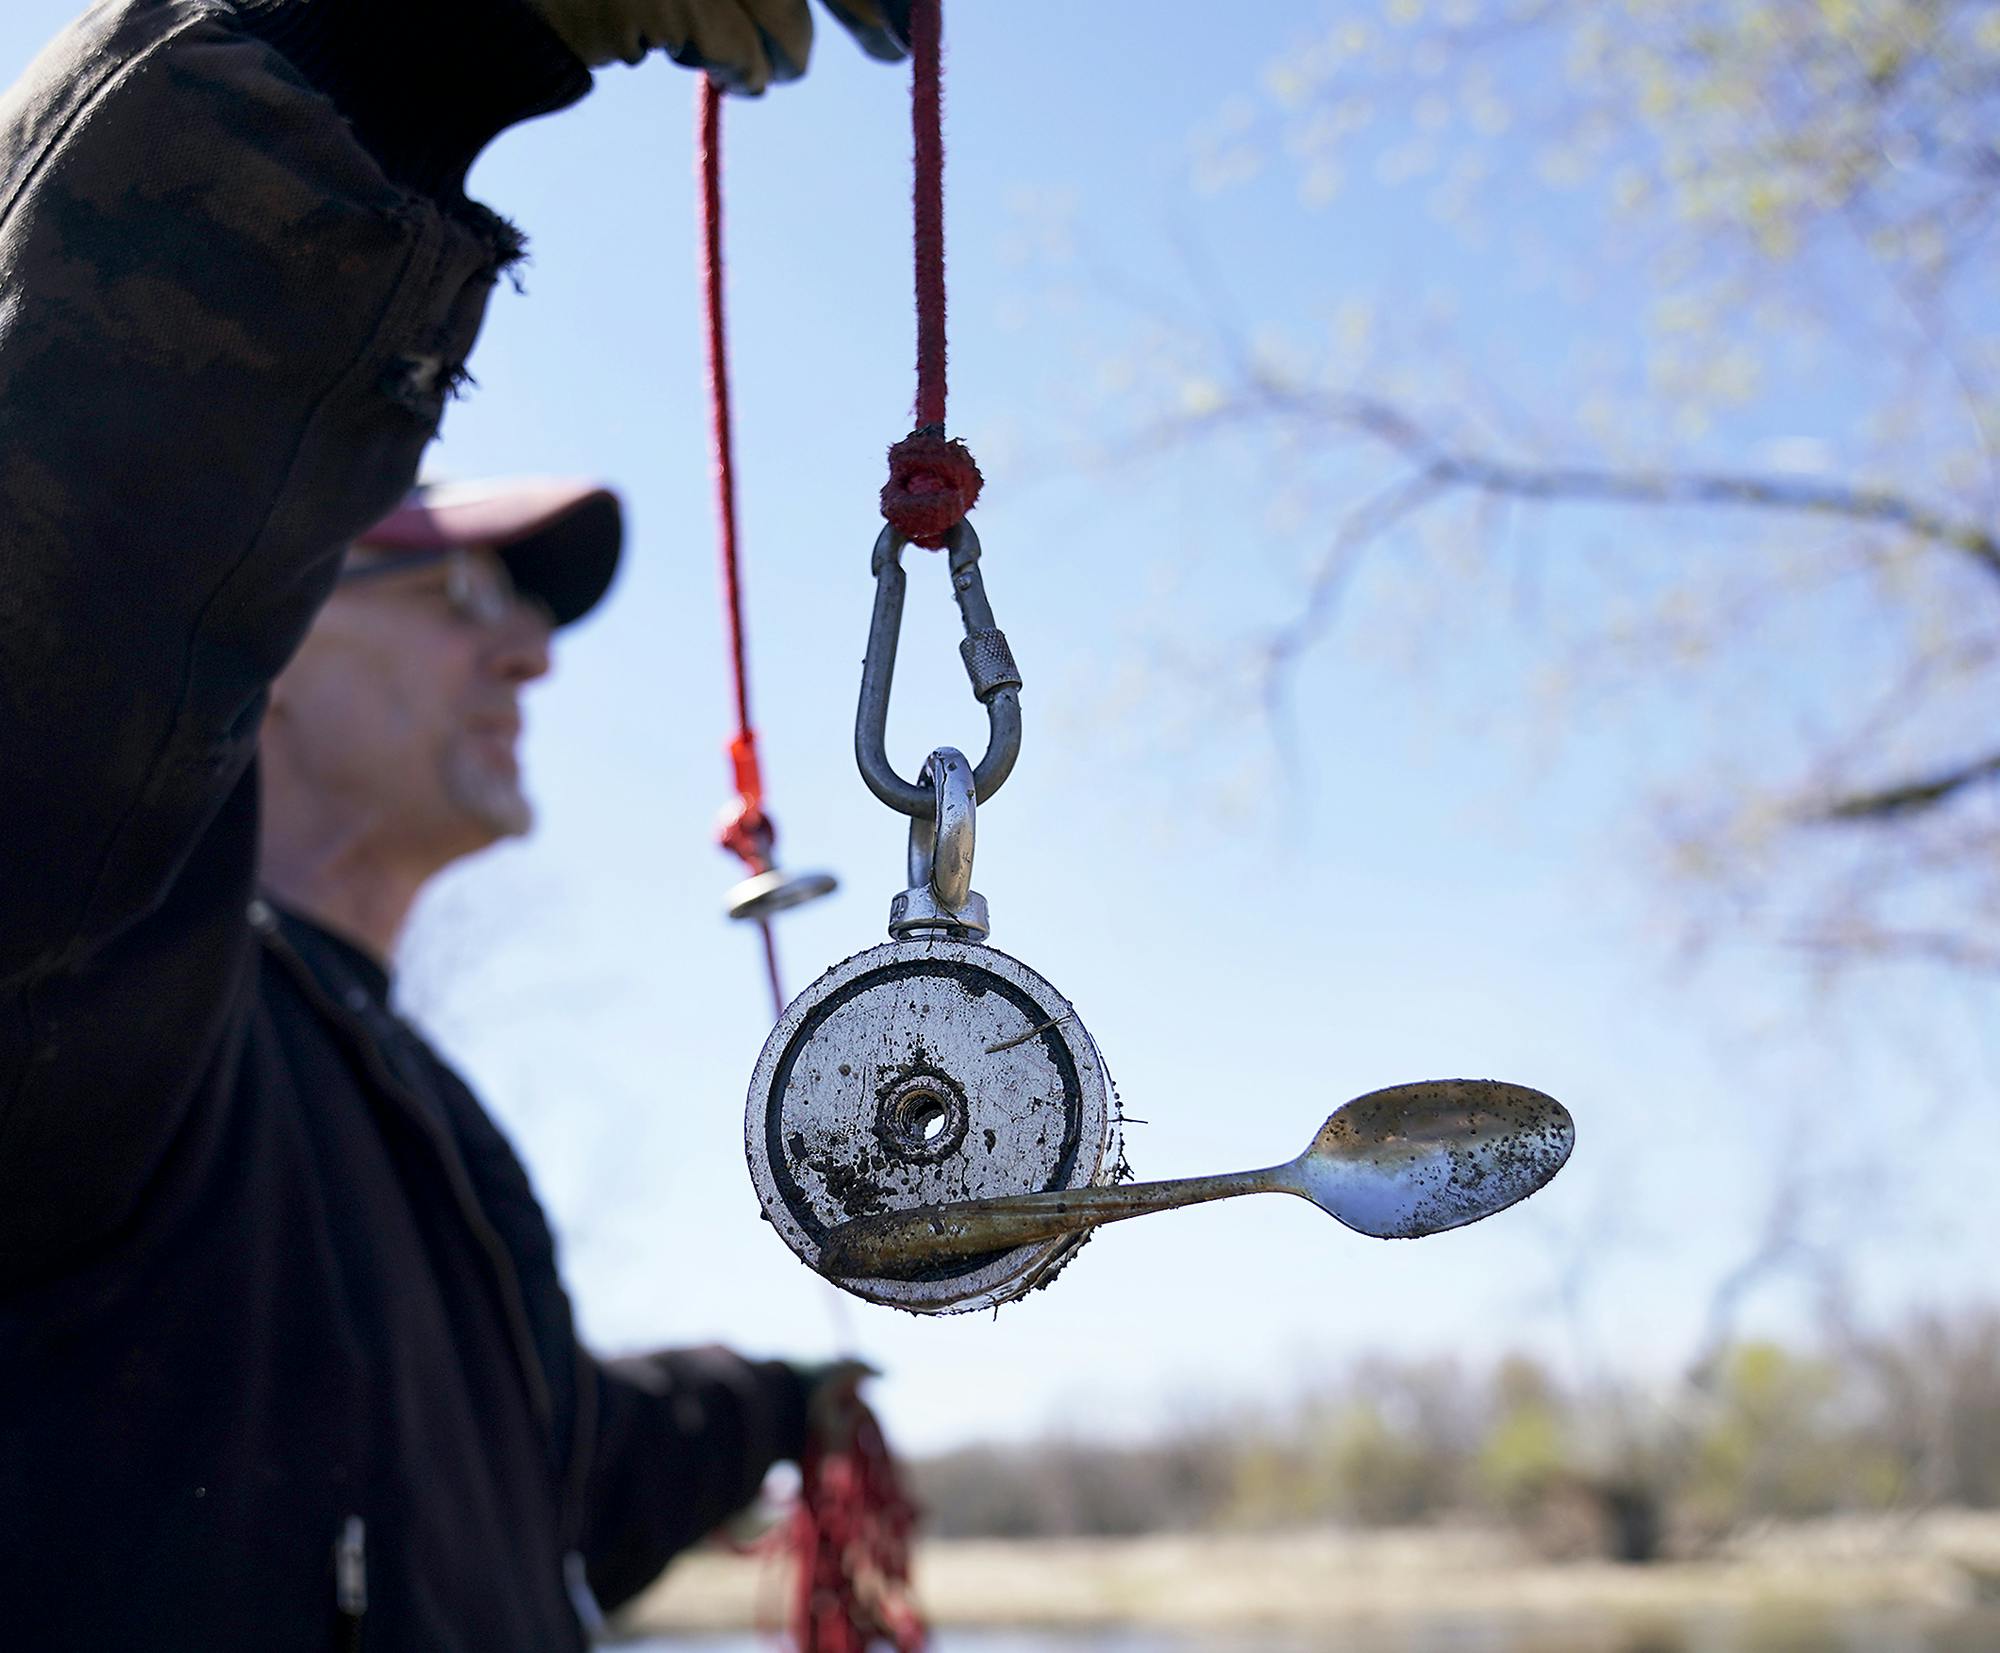 Minnesota's magnet fishers seek sunken treasure, be it antique